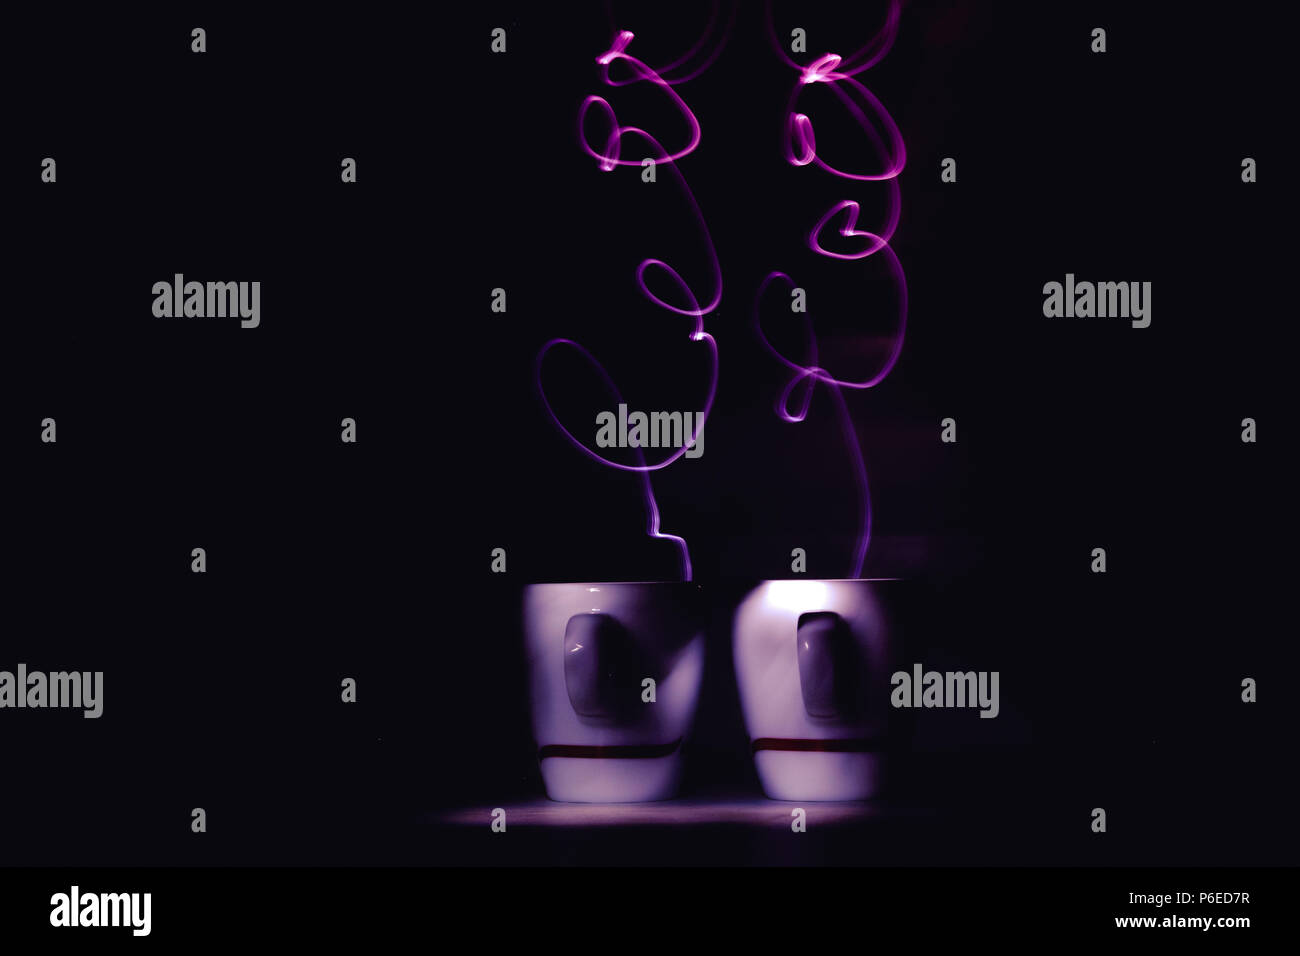 Pinceau de lumière, lightgraphy ou lightpainting de couleur violette de vapeur mot amour de petites tasses à expresso café - art photography. Copyspace Banque D'Images